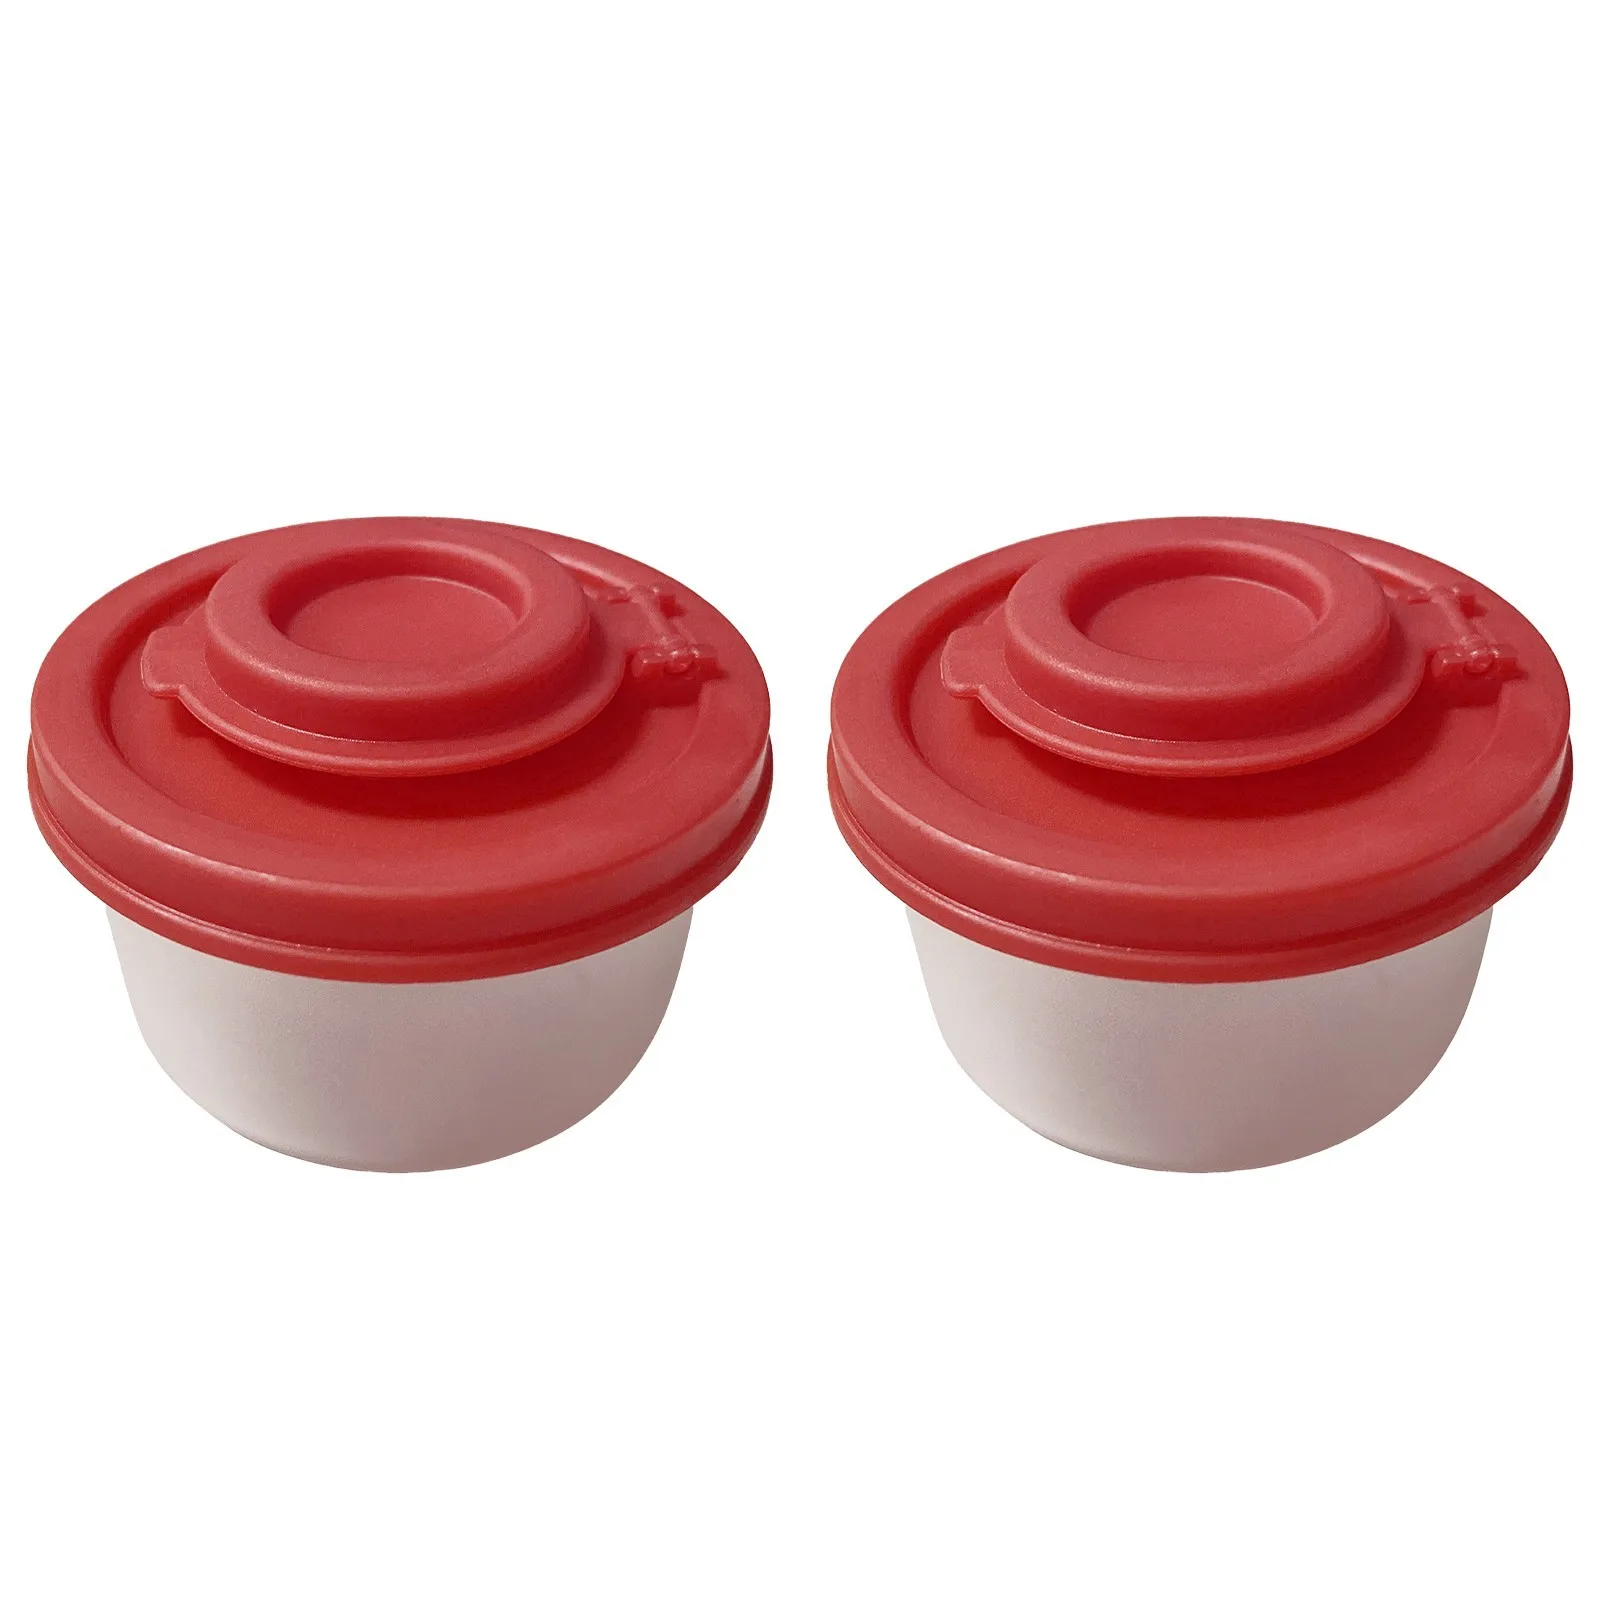 NZHK Plastica Spice Salt Shaker Agitatori del Pepe Vasi Condimento Pentole Condimento Shaker Set di 6 Contenitori Bagagli Vasi Contenitori per Spice Zucchero,caffè 